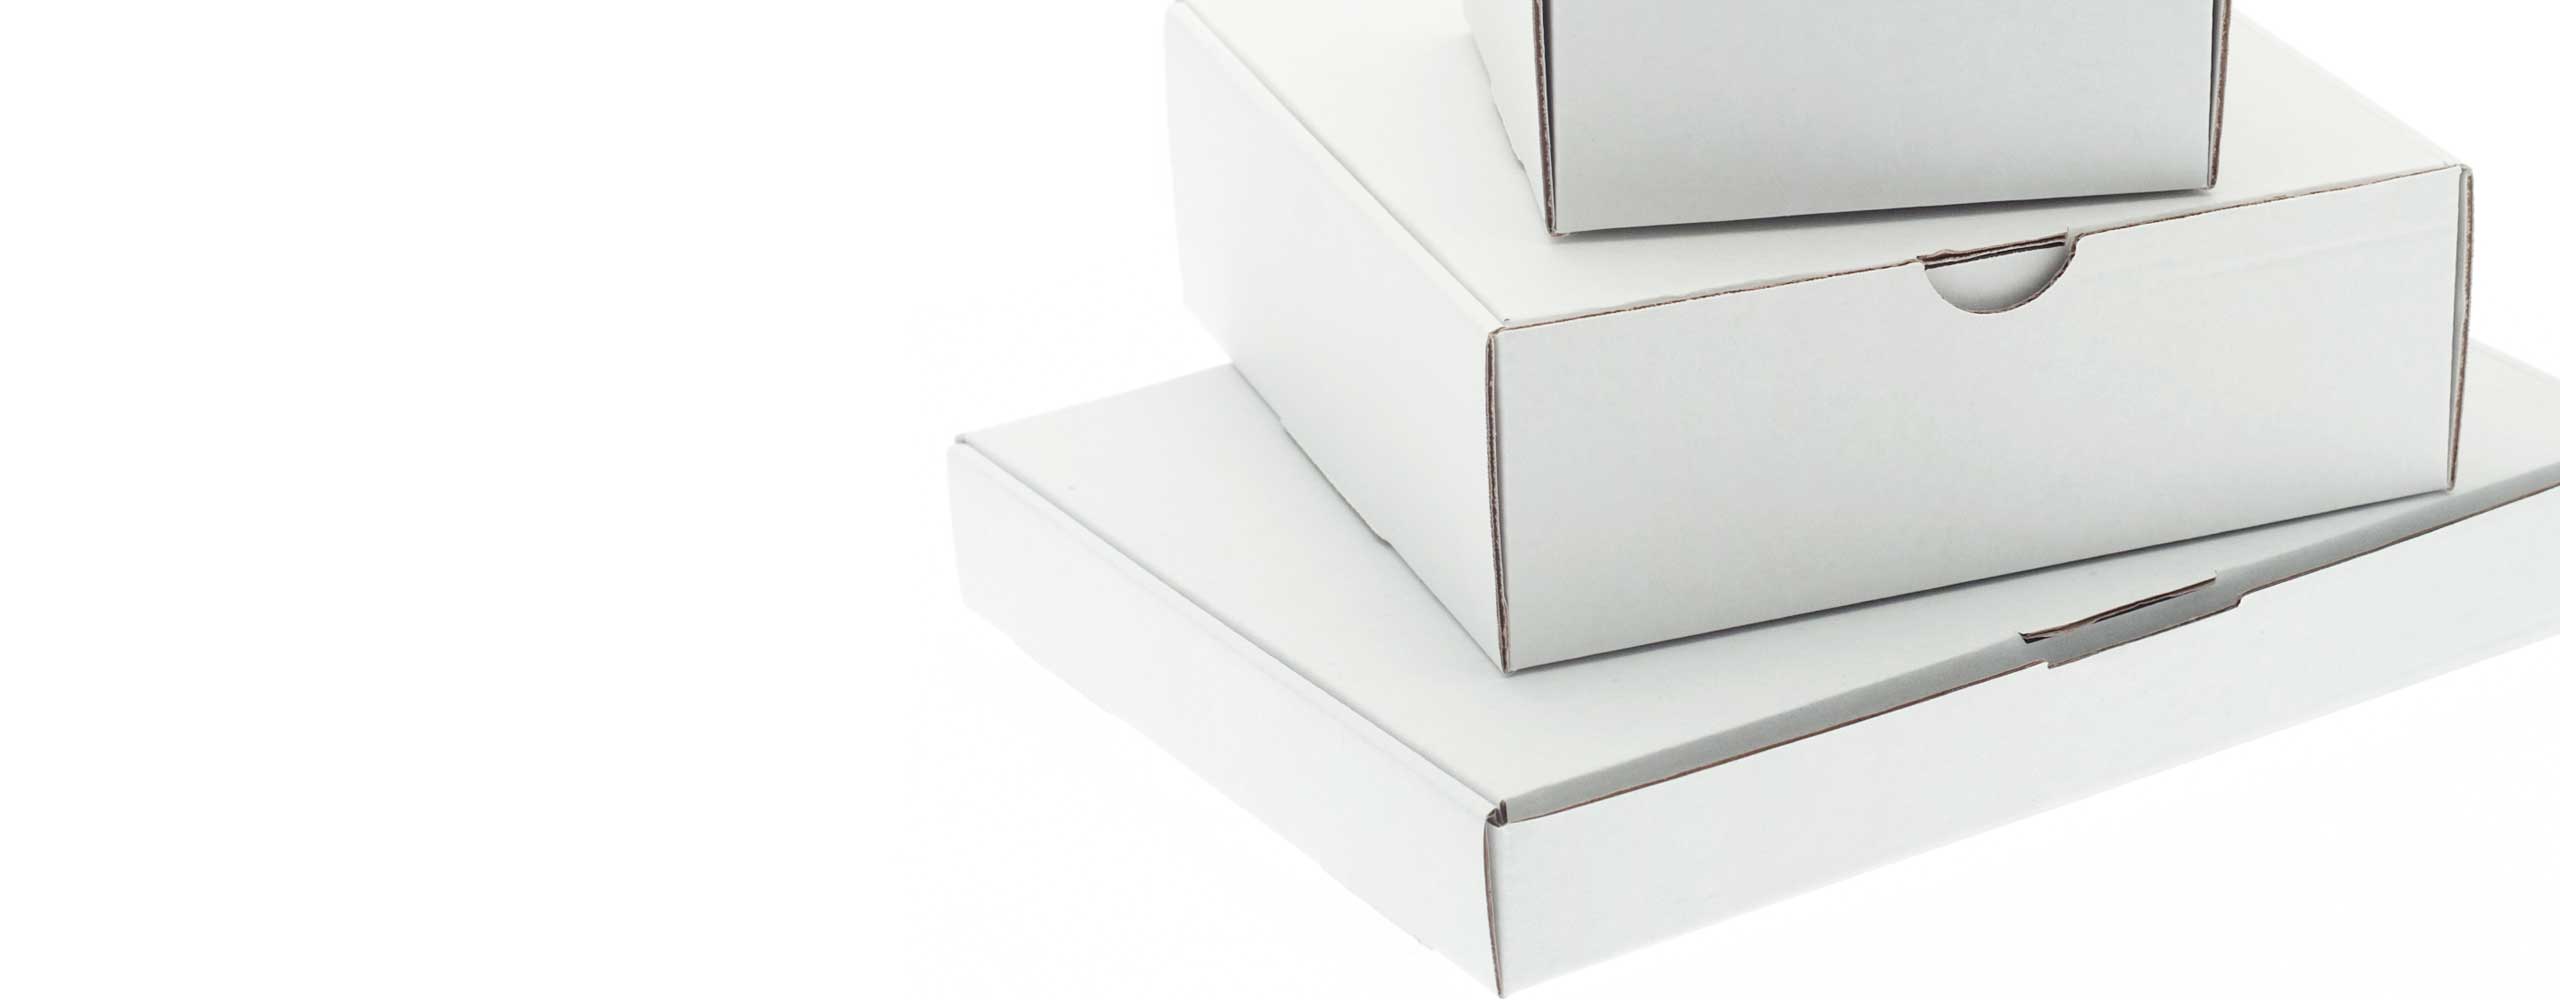 Weiße Kartons (Musterbeispiele) für Metalldosen zum Verpacken/Konfektionieren